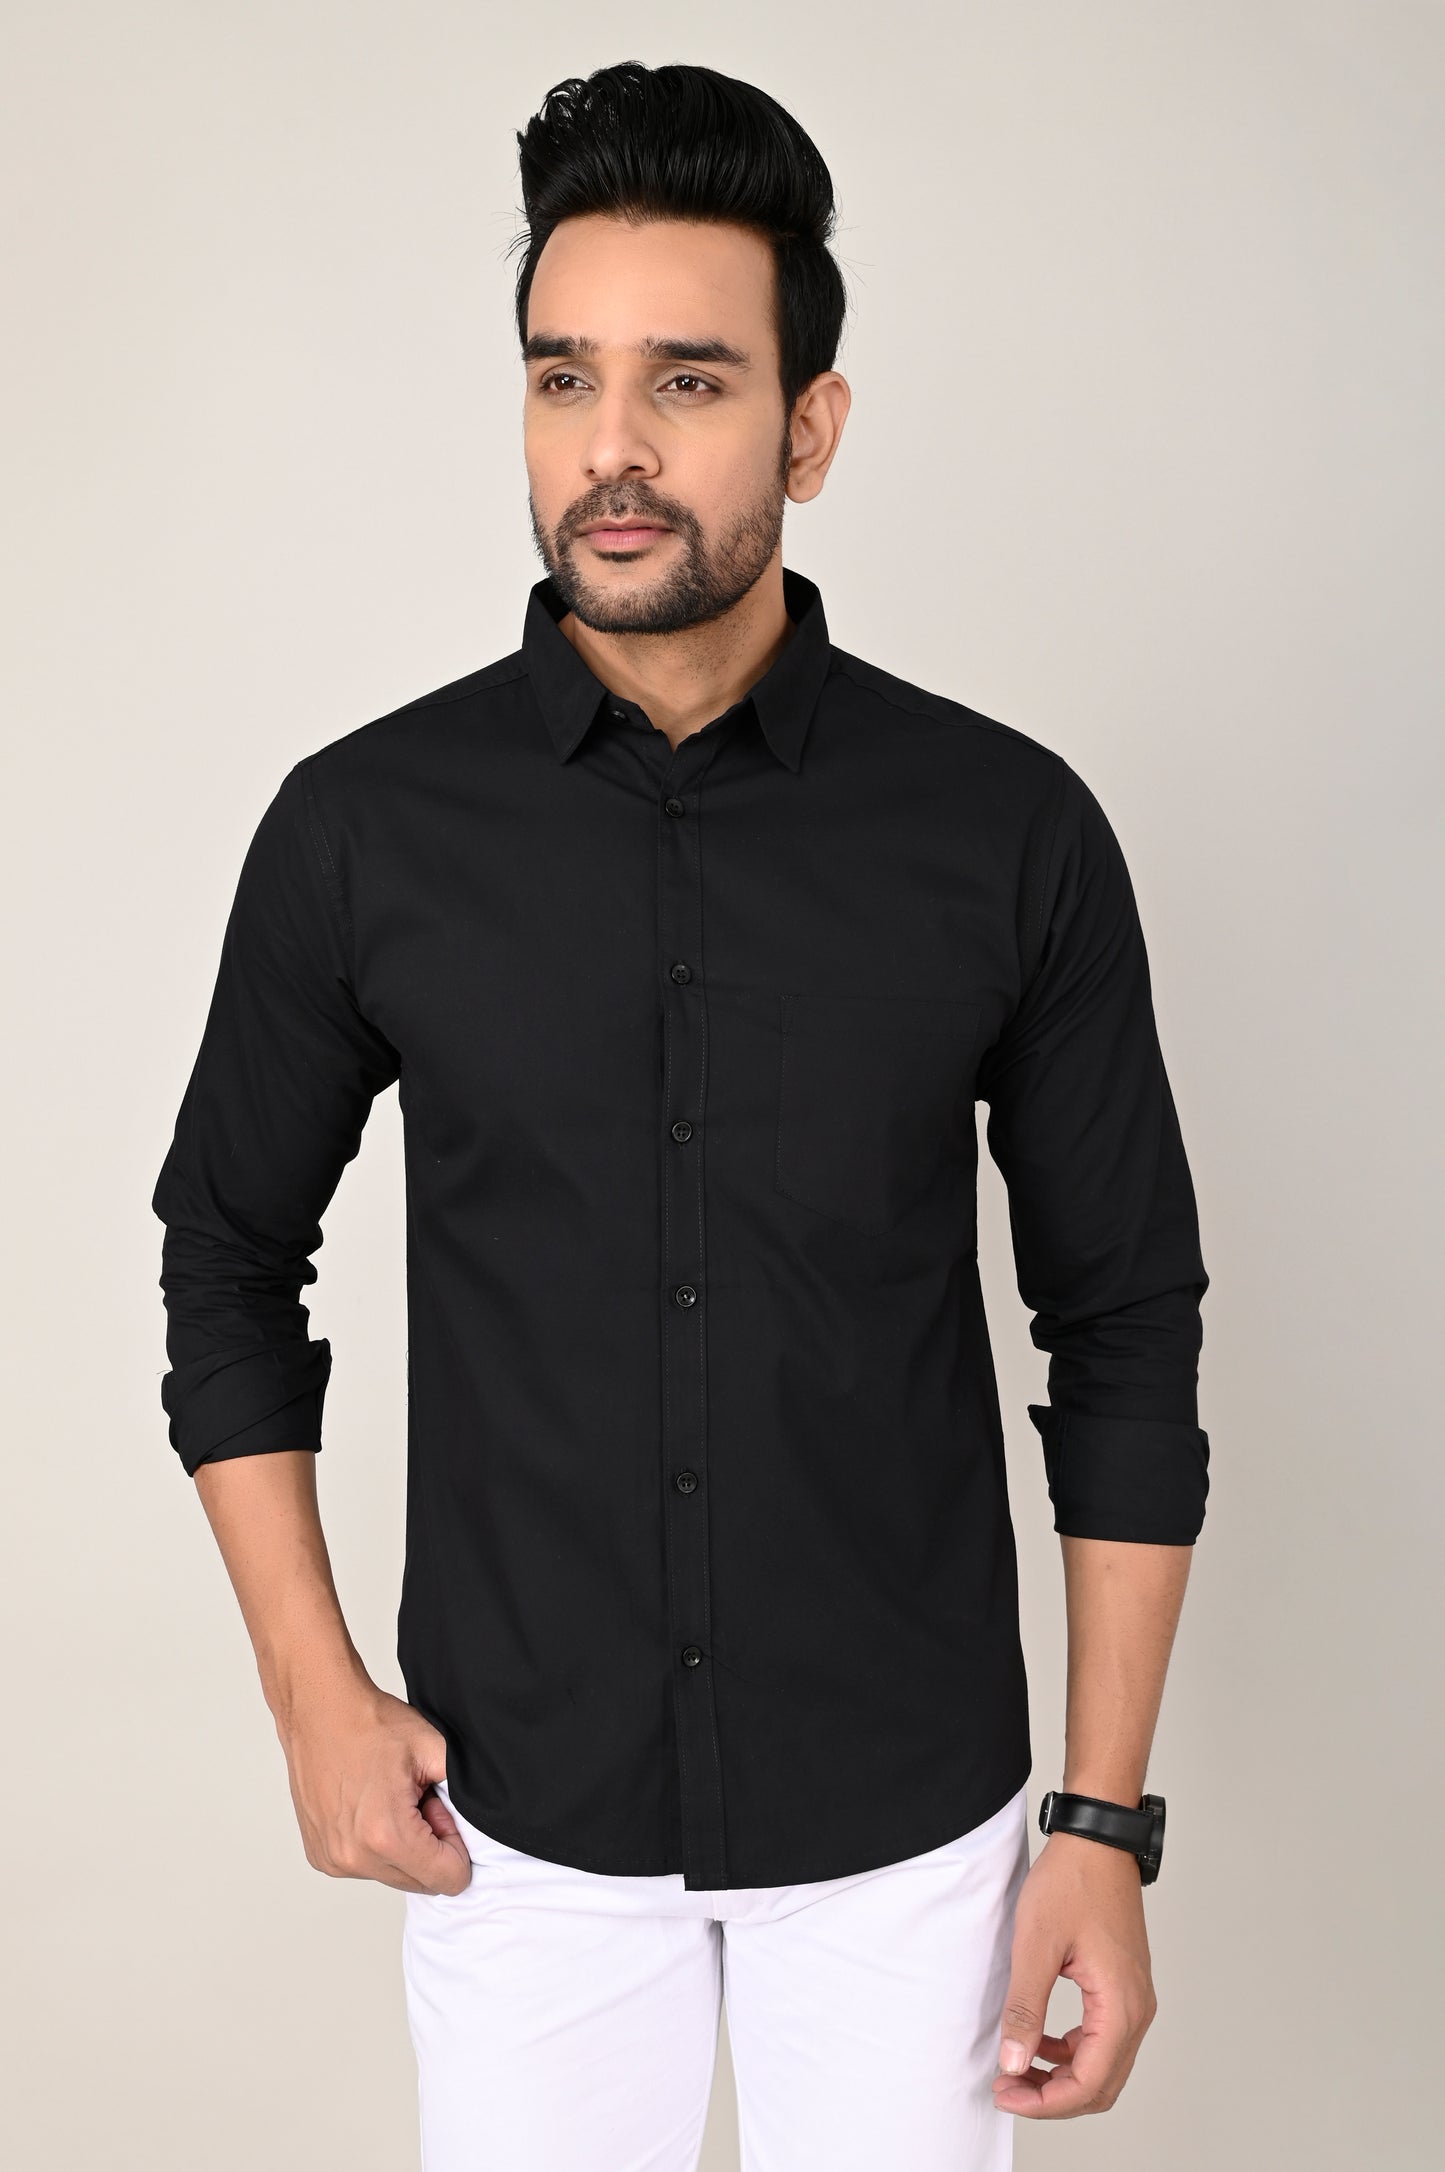 Men's Black Full Sleeves shirts